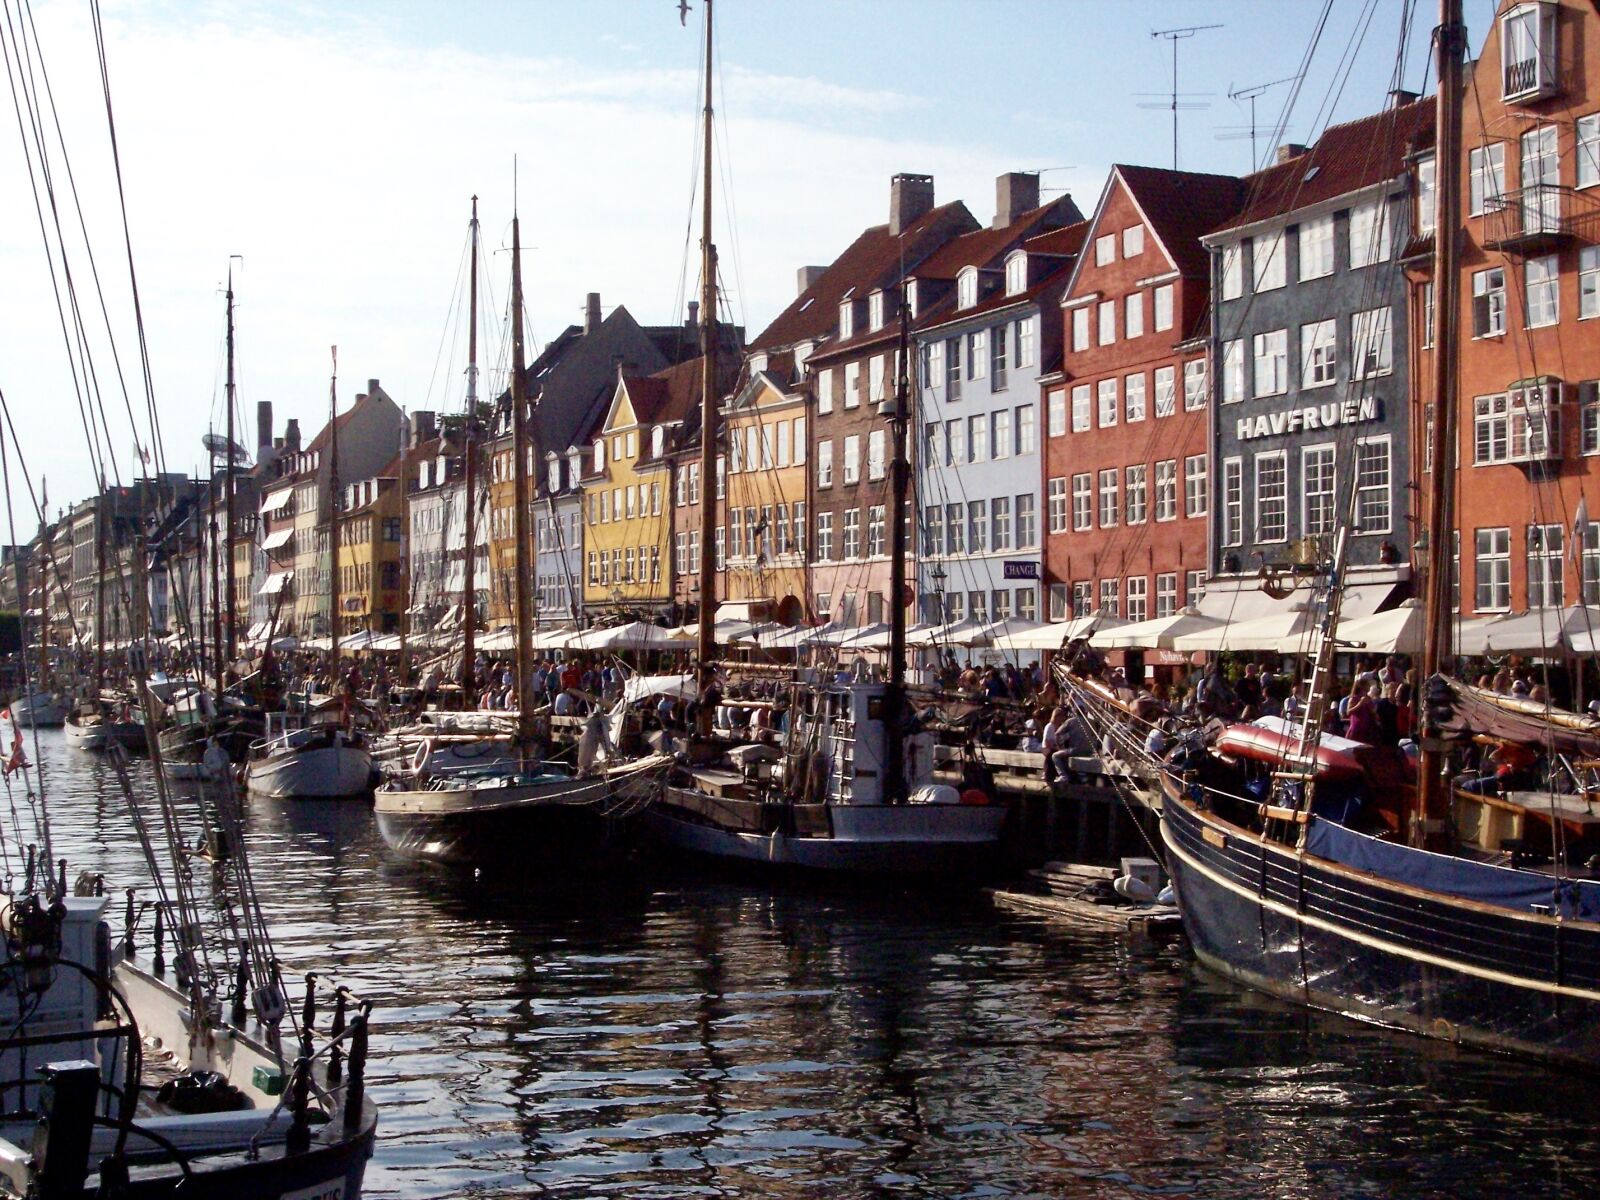 Kodak DX7630 ZOOM DIGITAL CAMERA sample photo. Copenhagen, porto, boats photography